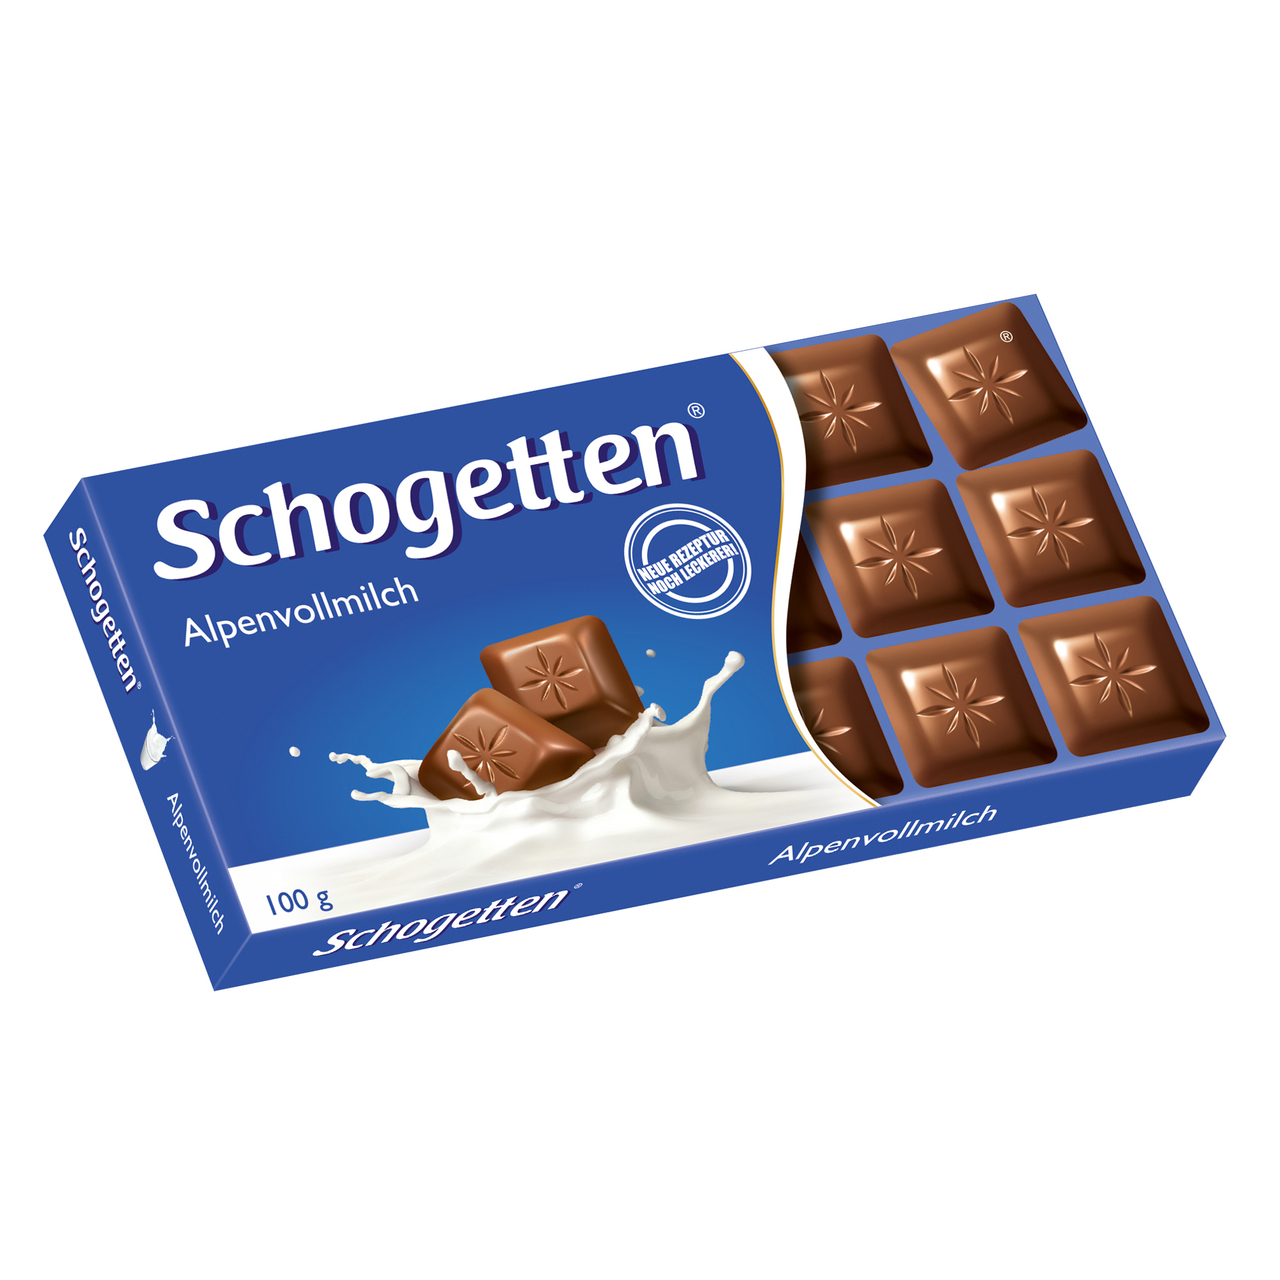 Bulk Schogetten Alpine Milk Chocolate with Hazelnuts suppliers